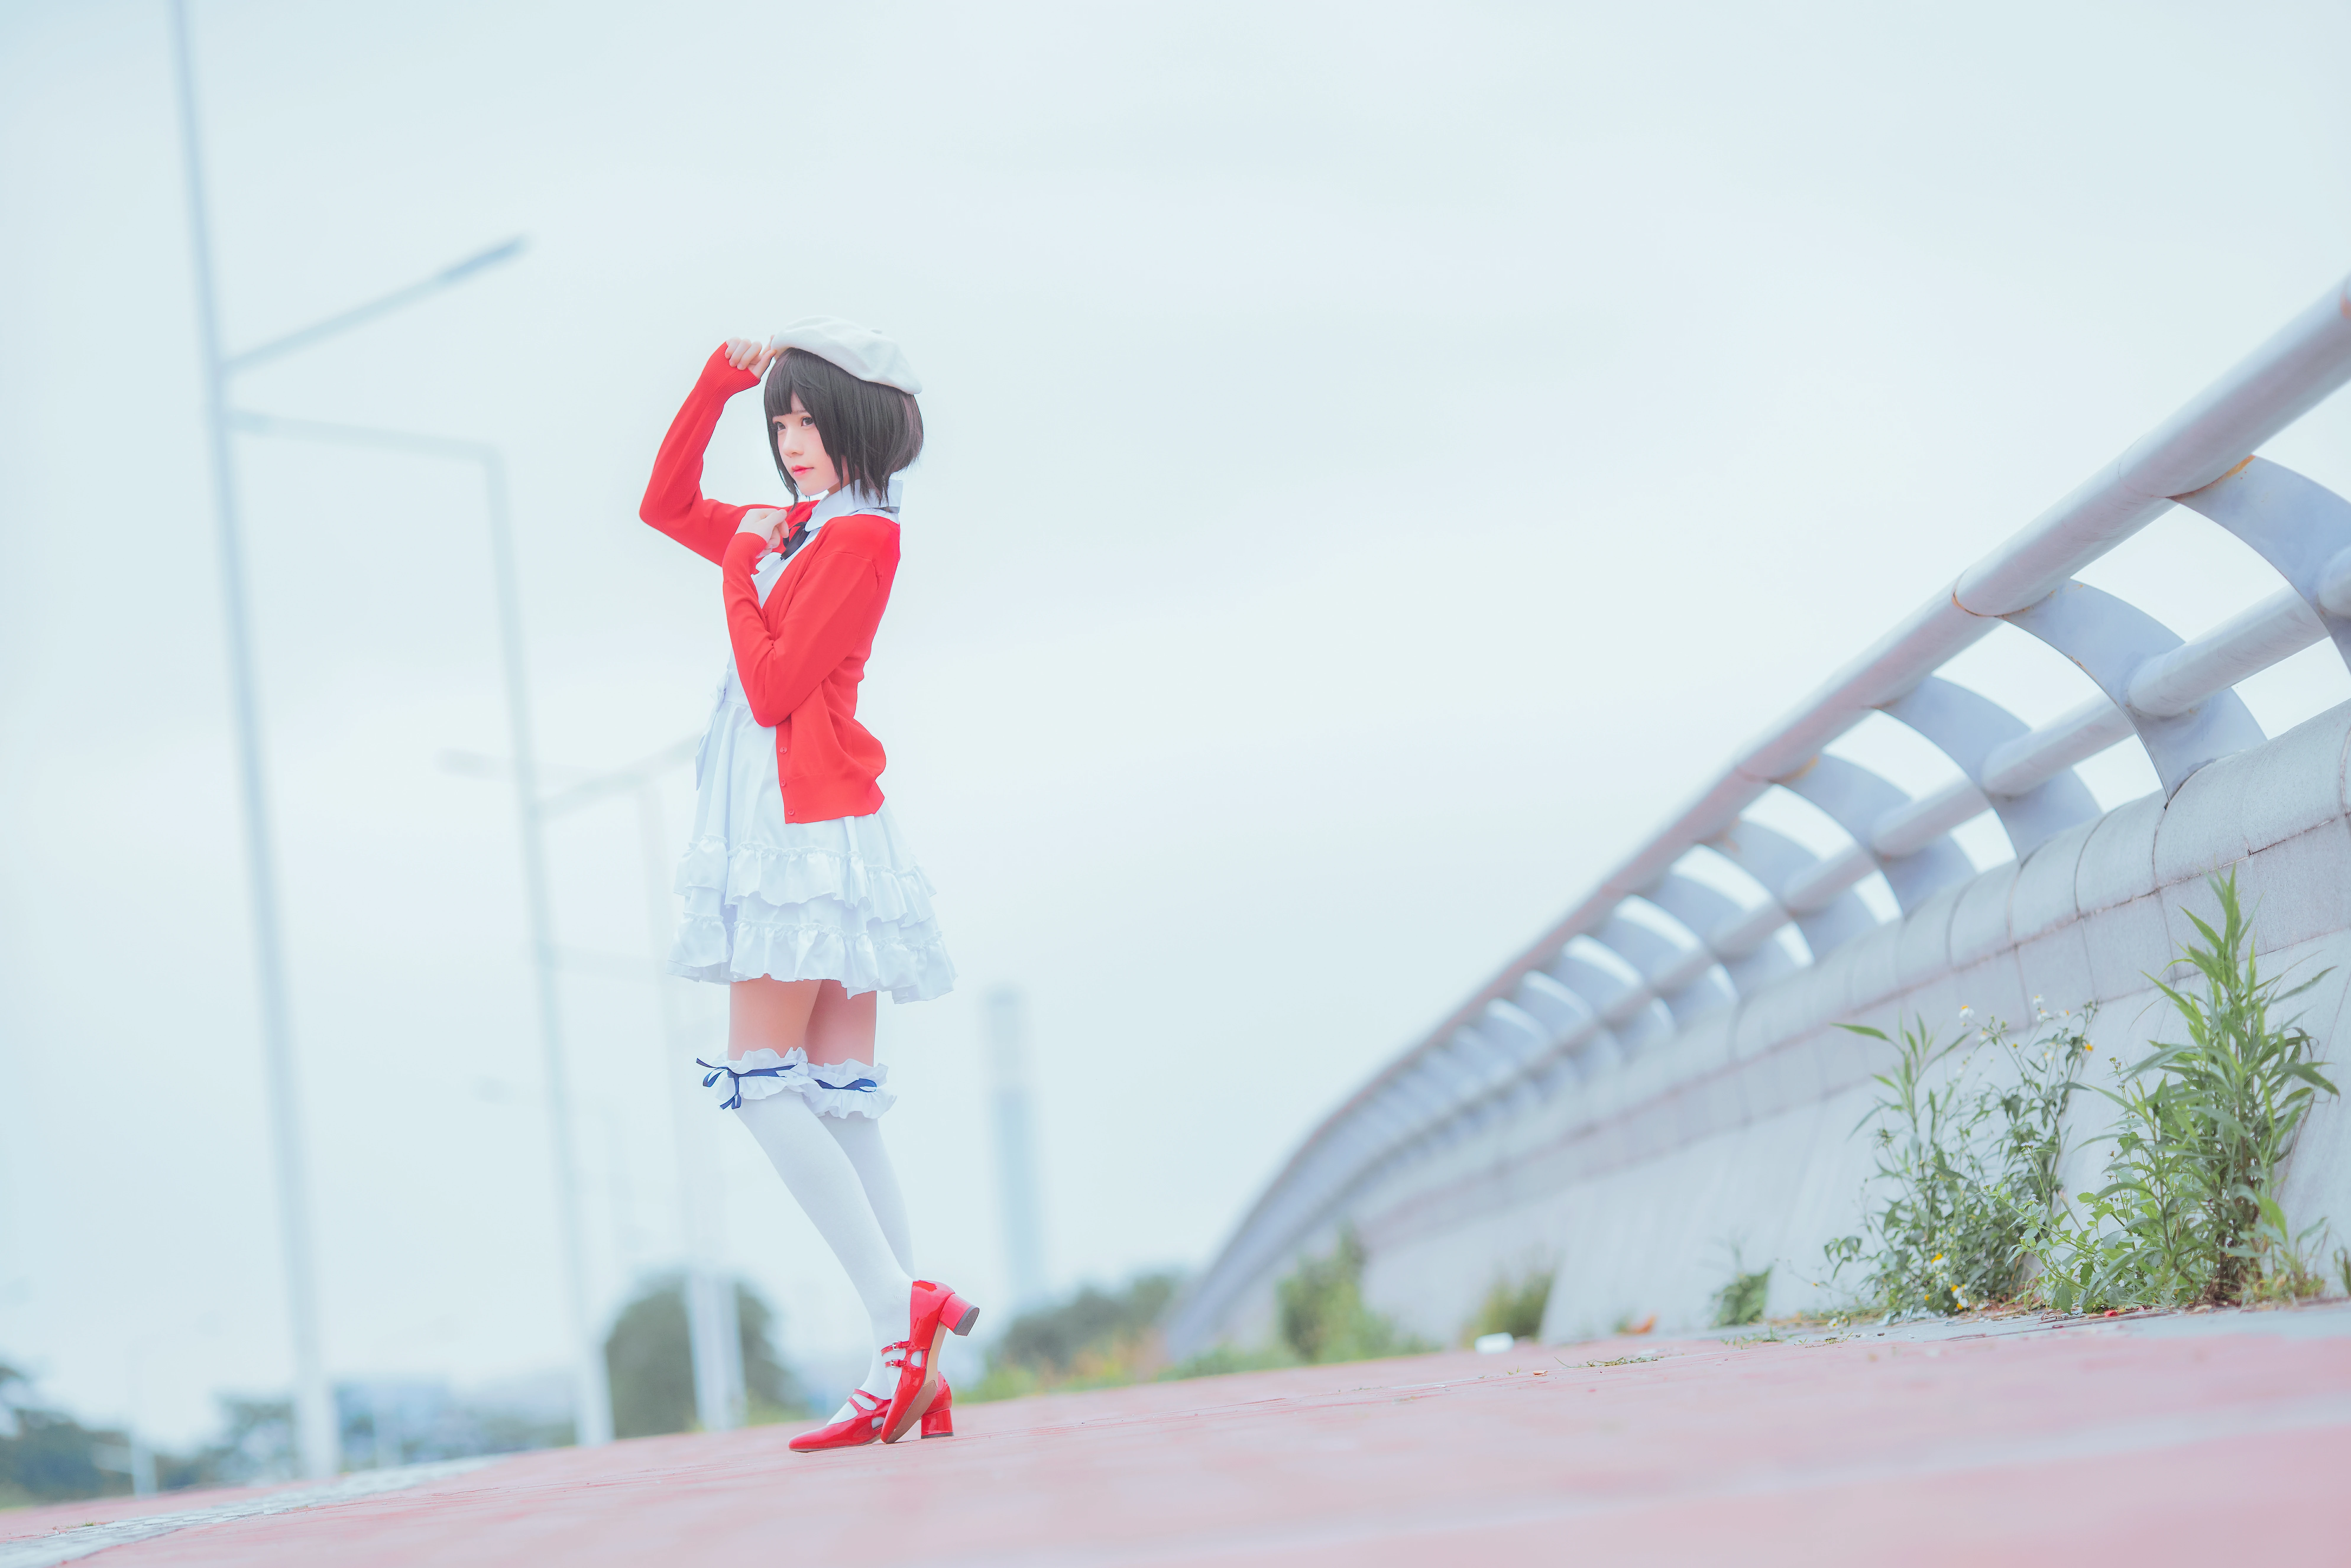 清纯少女 桜桃喵 红色外套与白色连衣裙加白色丝袜美腿街拍写真,0005